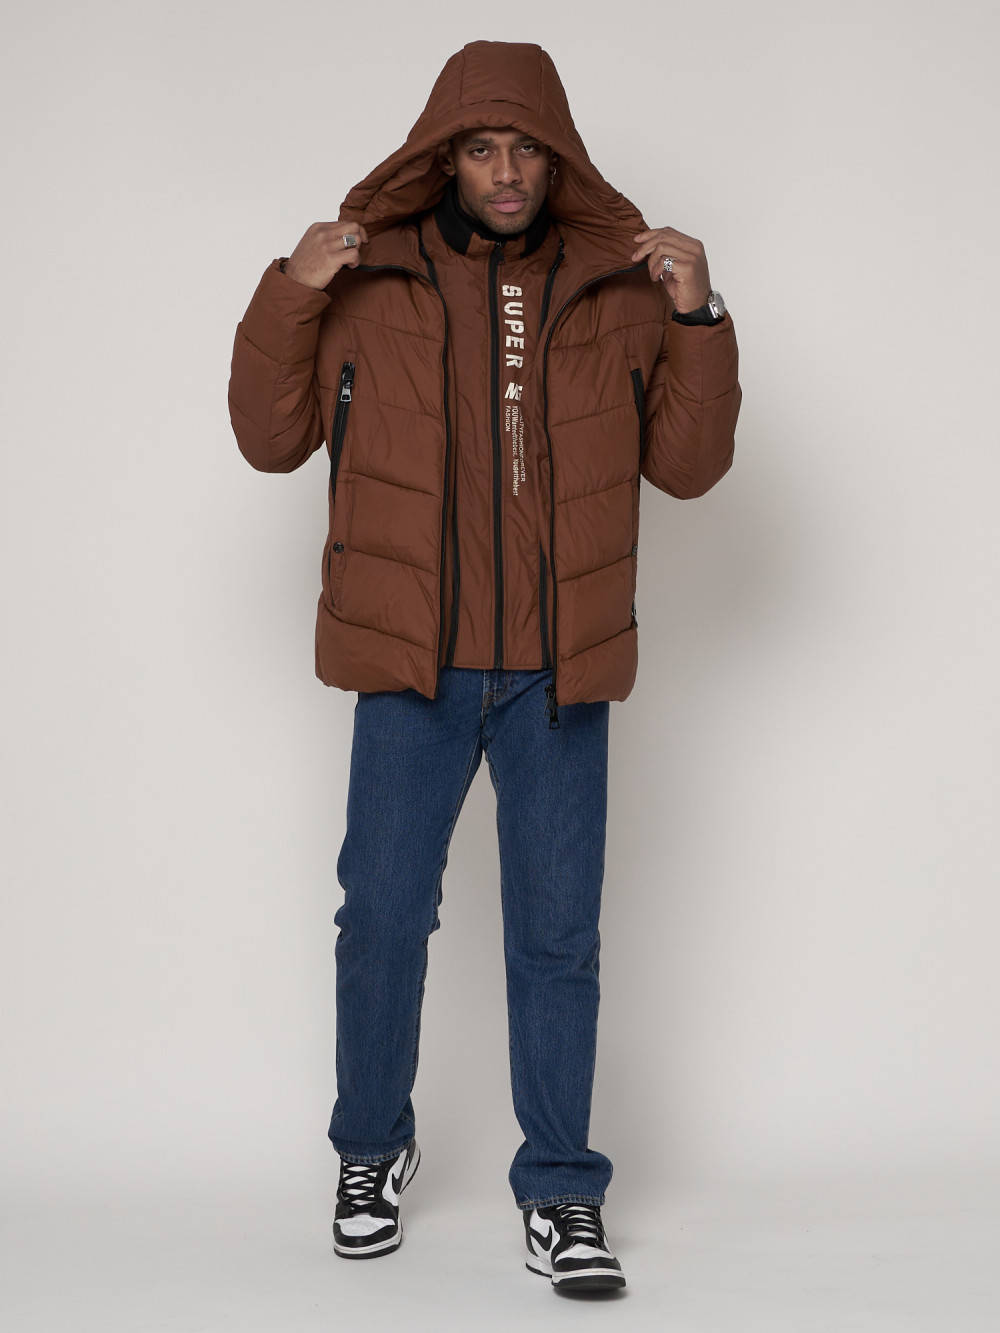 Купить оптом Спортивная молодежная куртка мужская коричневого цвета 93691K в Екатеринбурге